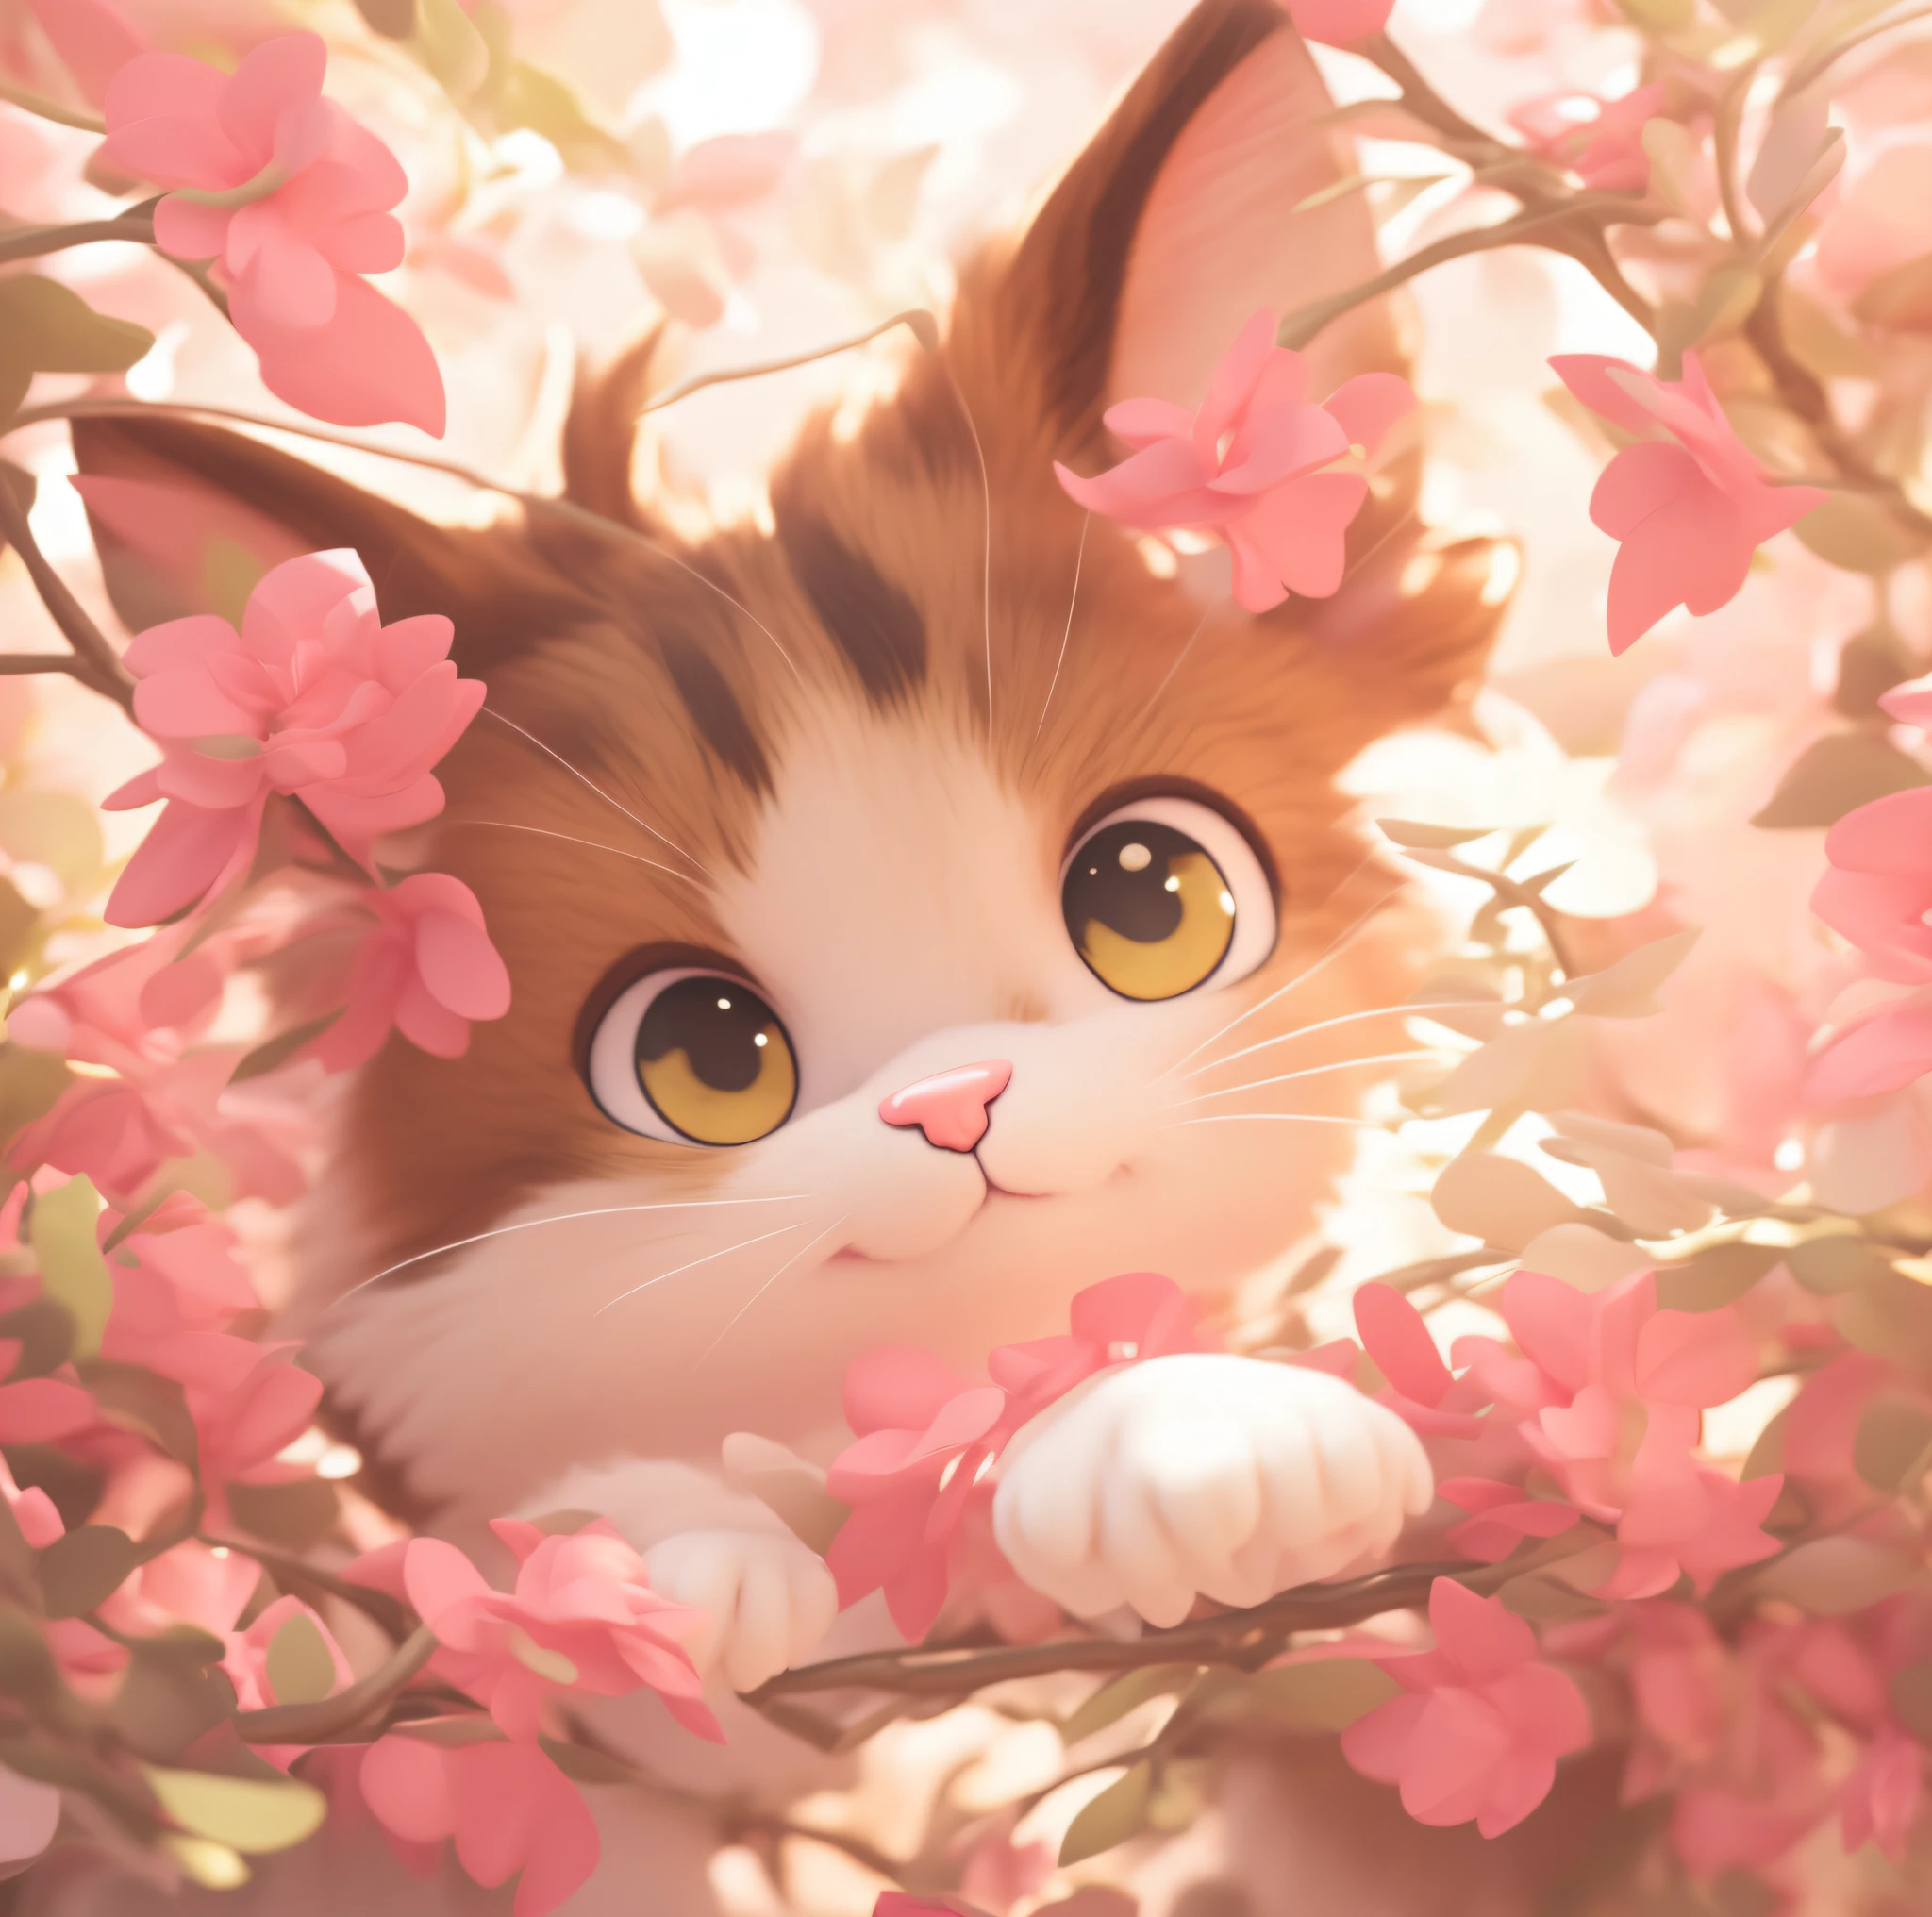 毛茸茸的小猫, 可爱细致的数字艺术, 可爱的 3D 渲染, 可爱的数字绘画, 可爱的数字艺术, 来自《英雄联盟》的小猫, 可爱的小猫, 3d 渲染风格, 风格化 3d 渲染, Blender Eevee 渲染, 风格化为 3D 渲染, 粉色的, 梦境